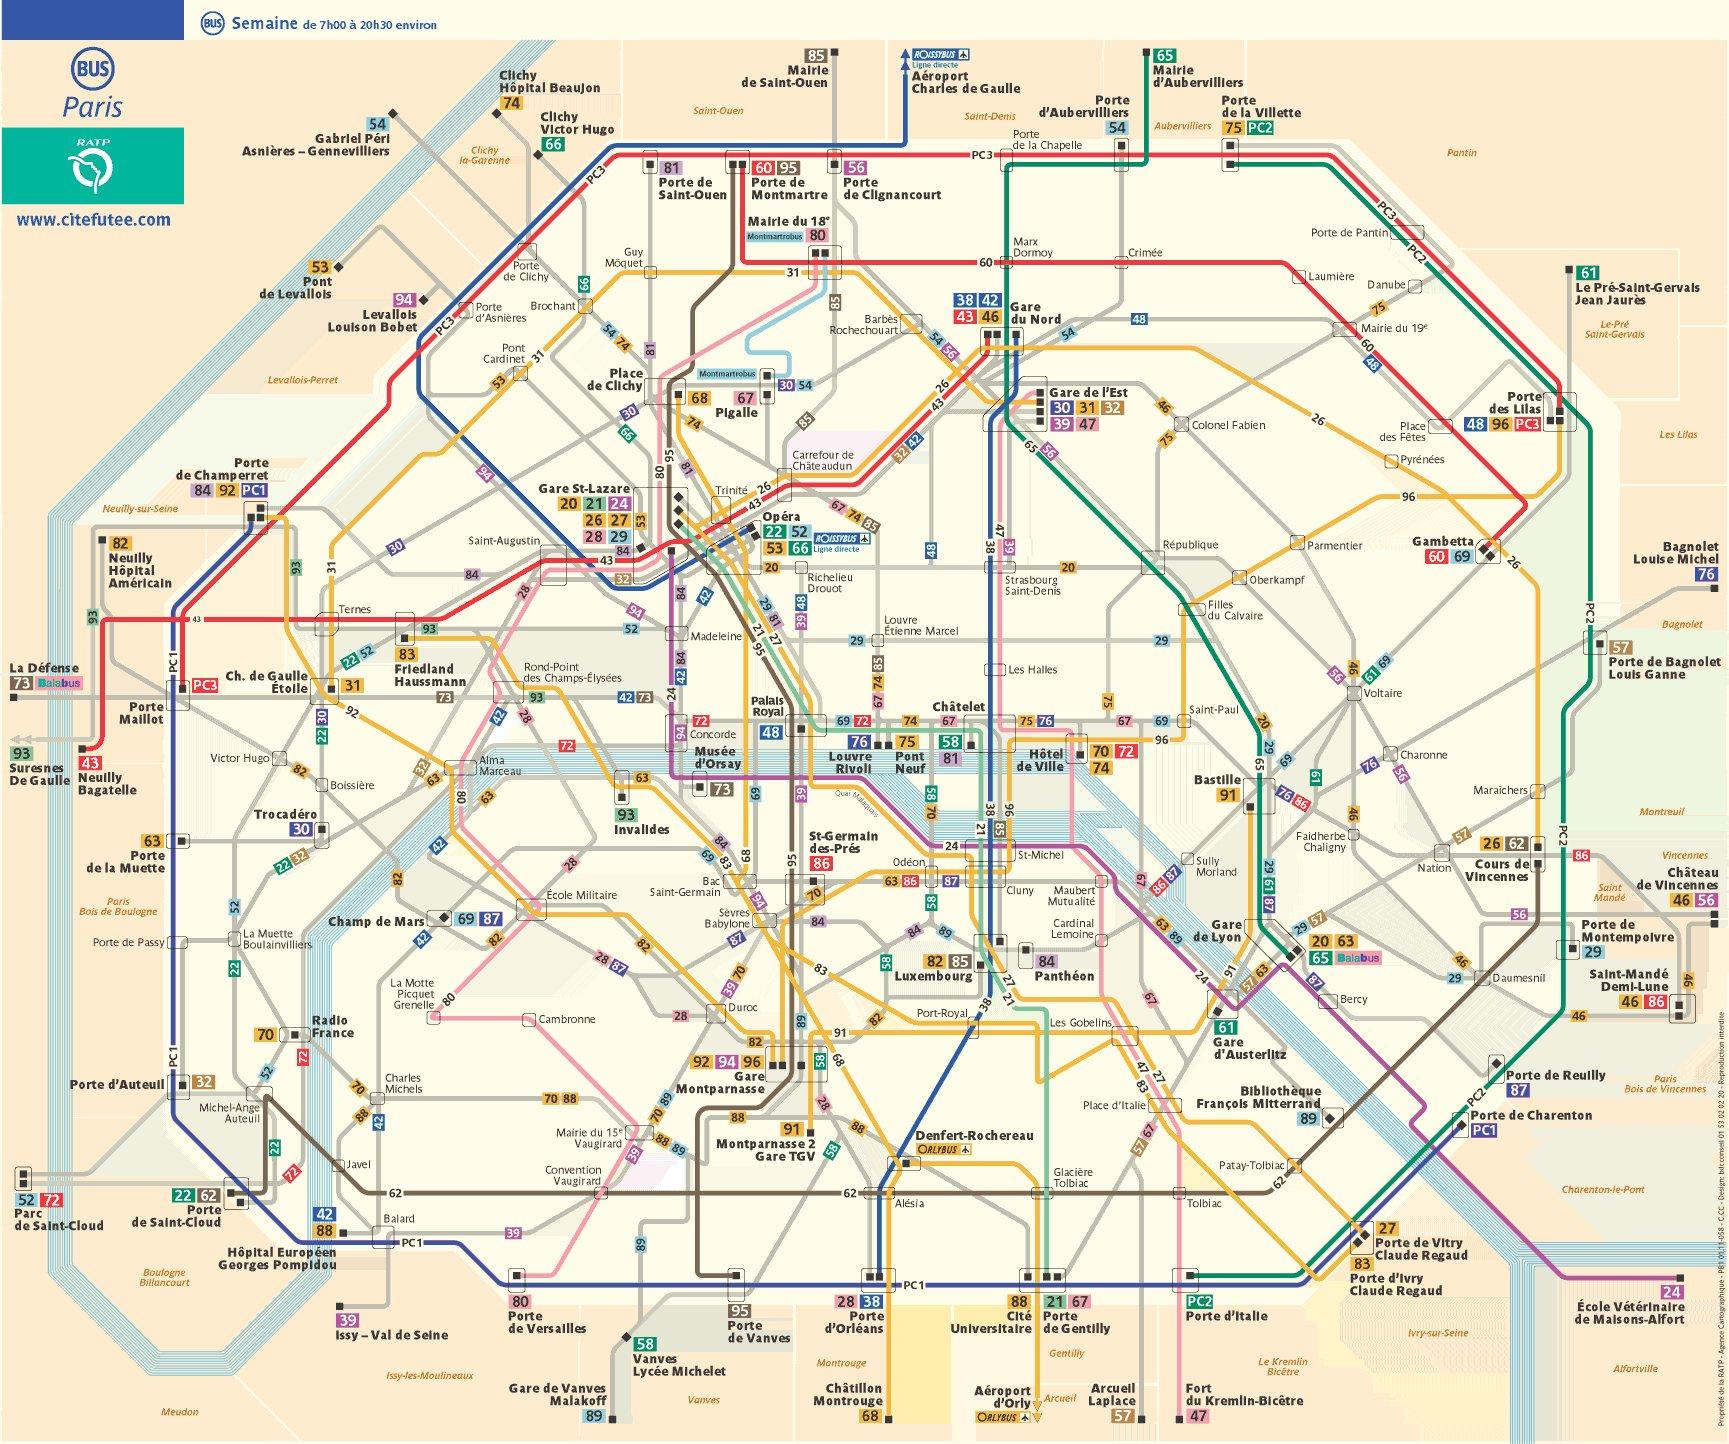 Paris bus route map - Paris bus map with streets (Île-de-France - France)